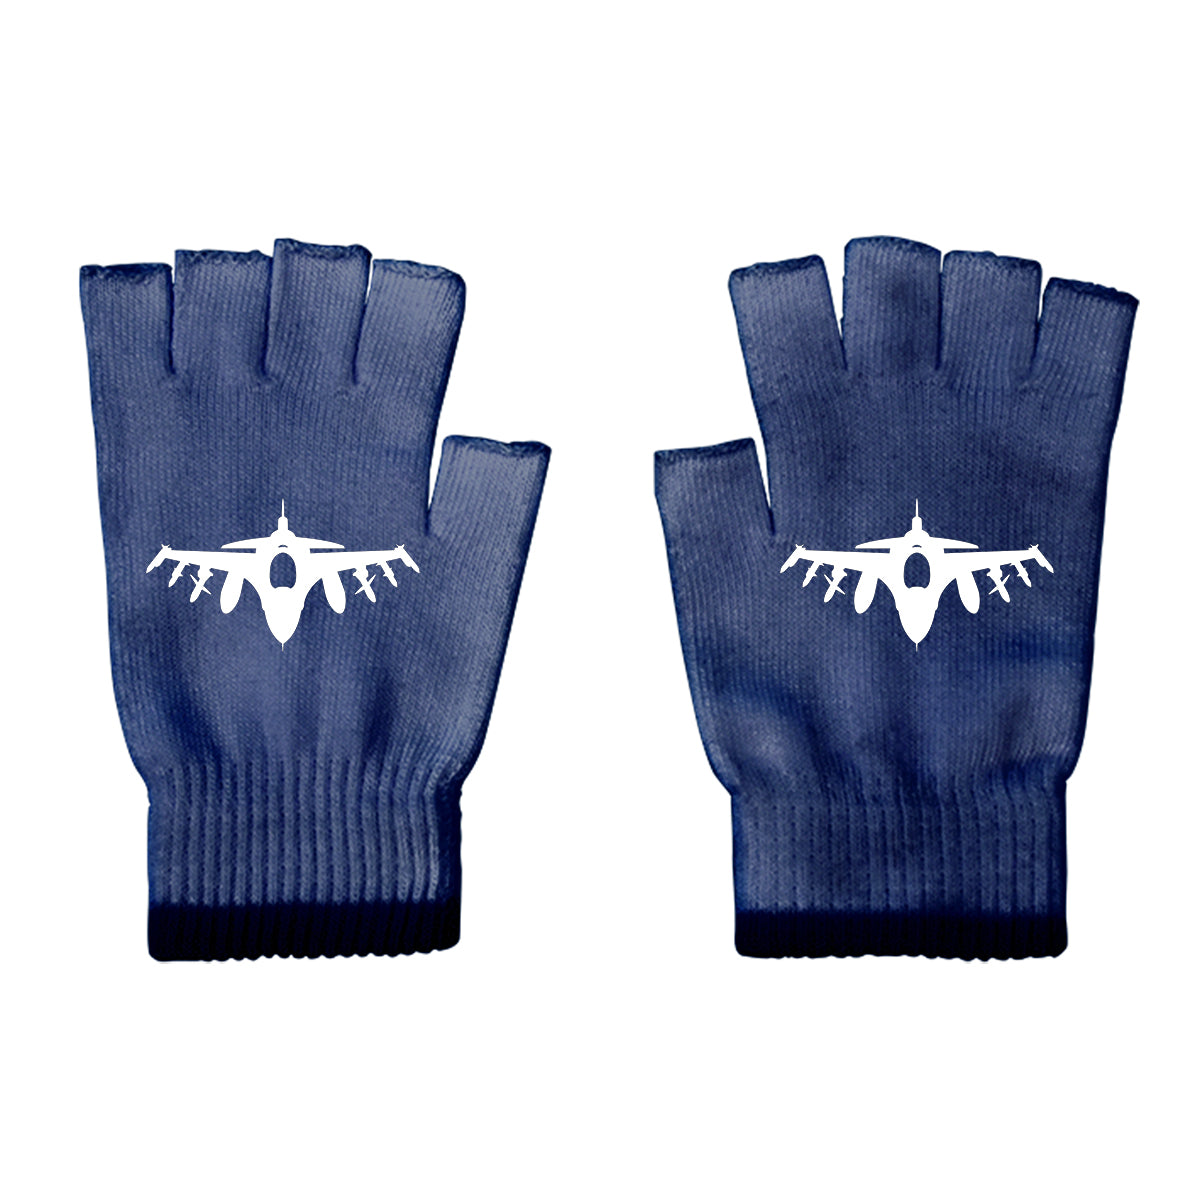 Fighting Falcon F16 Silhouette Designed Cut Gloves